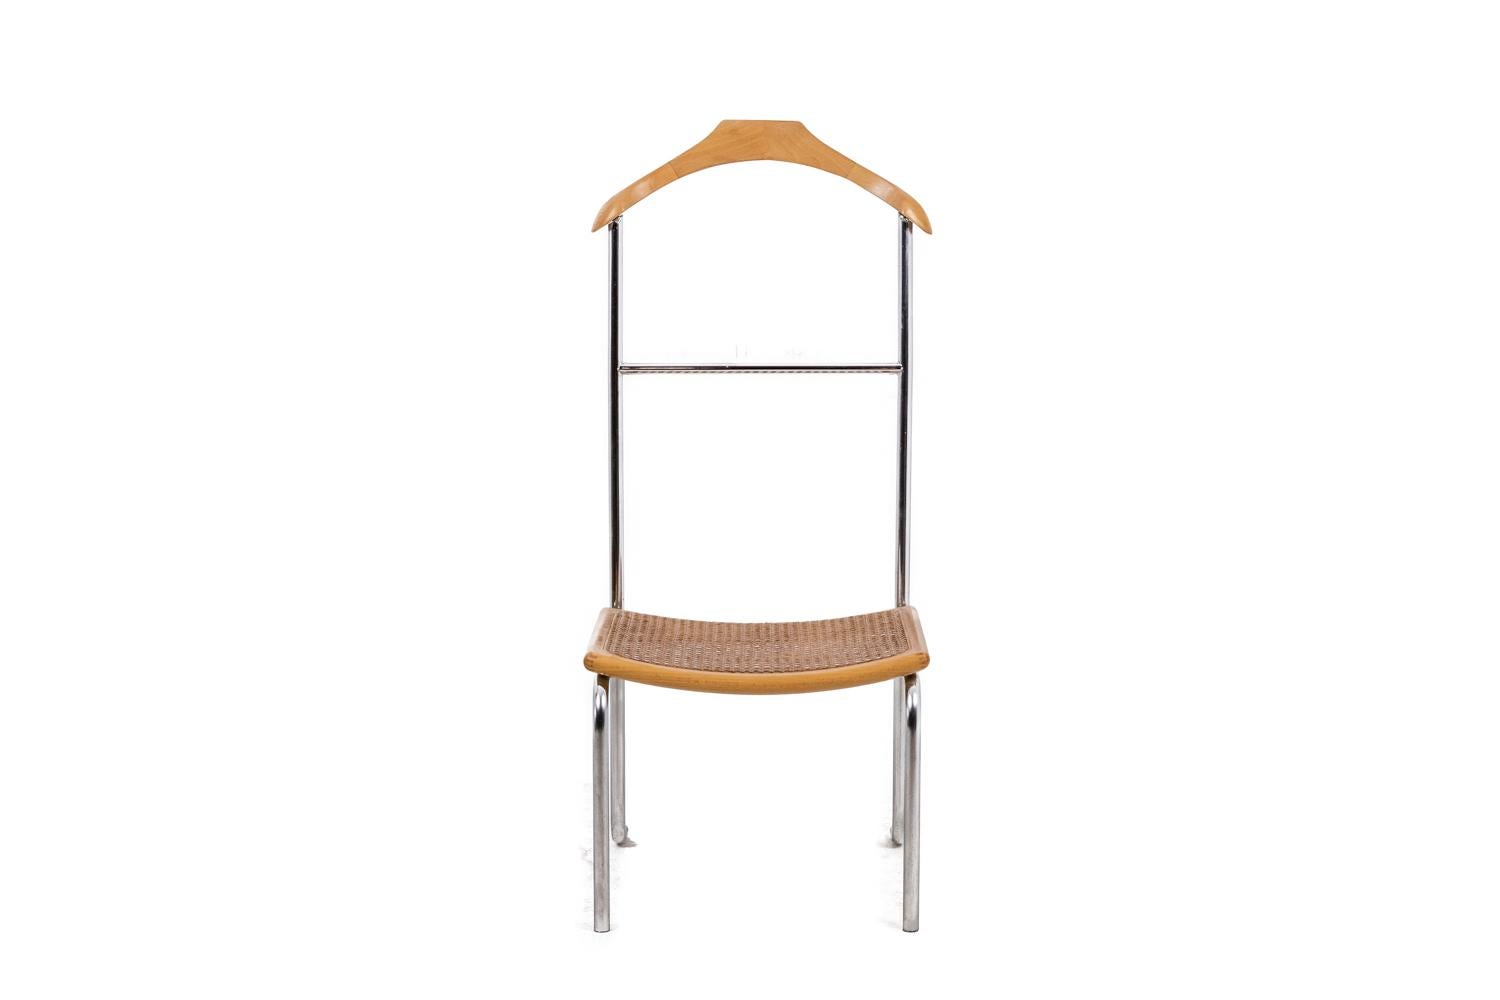 Breuer, dans le style de. 

Paire de chaises valet en hêtre blond et métal chromé. Siège canné.

Travail français réalisé dans les années 1980.